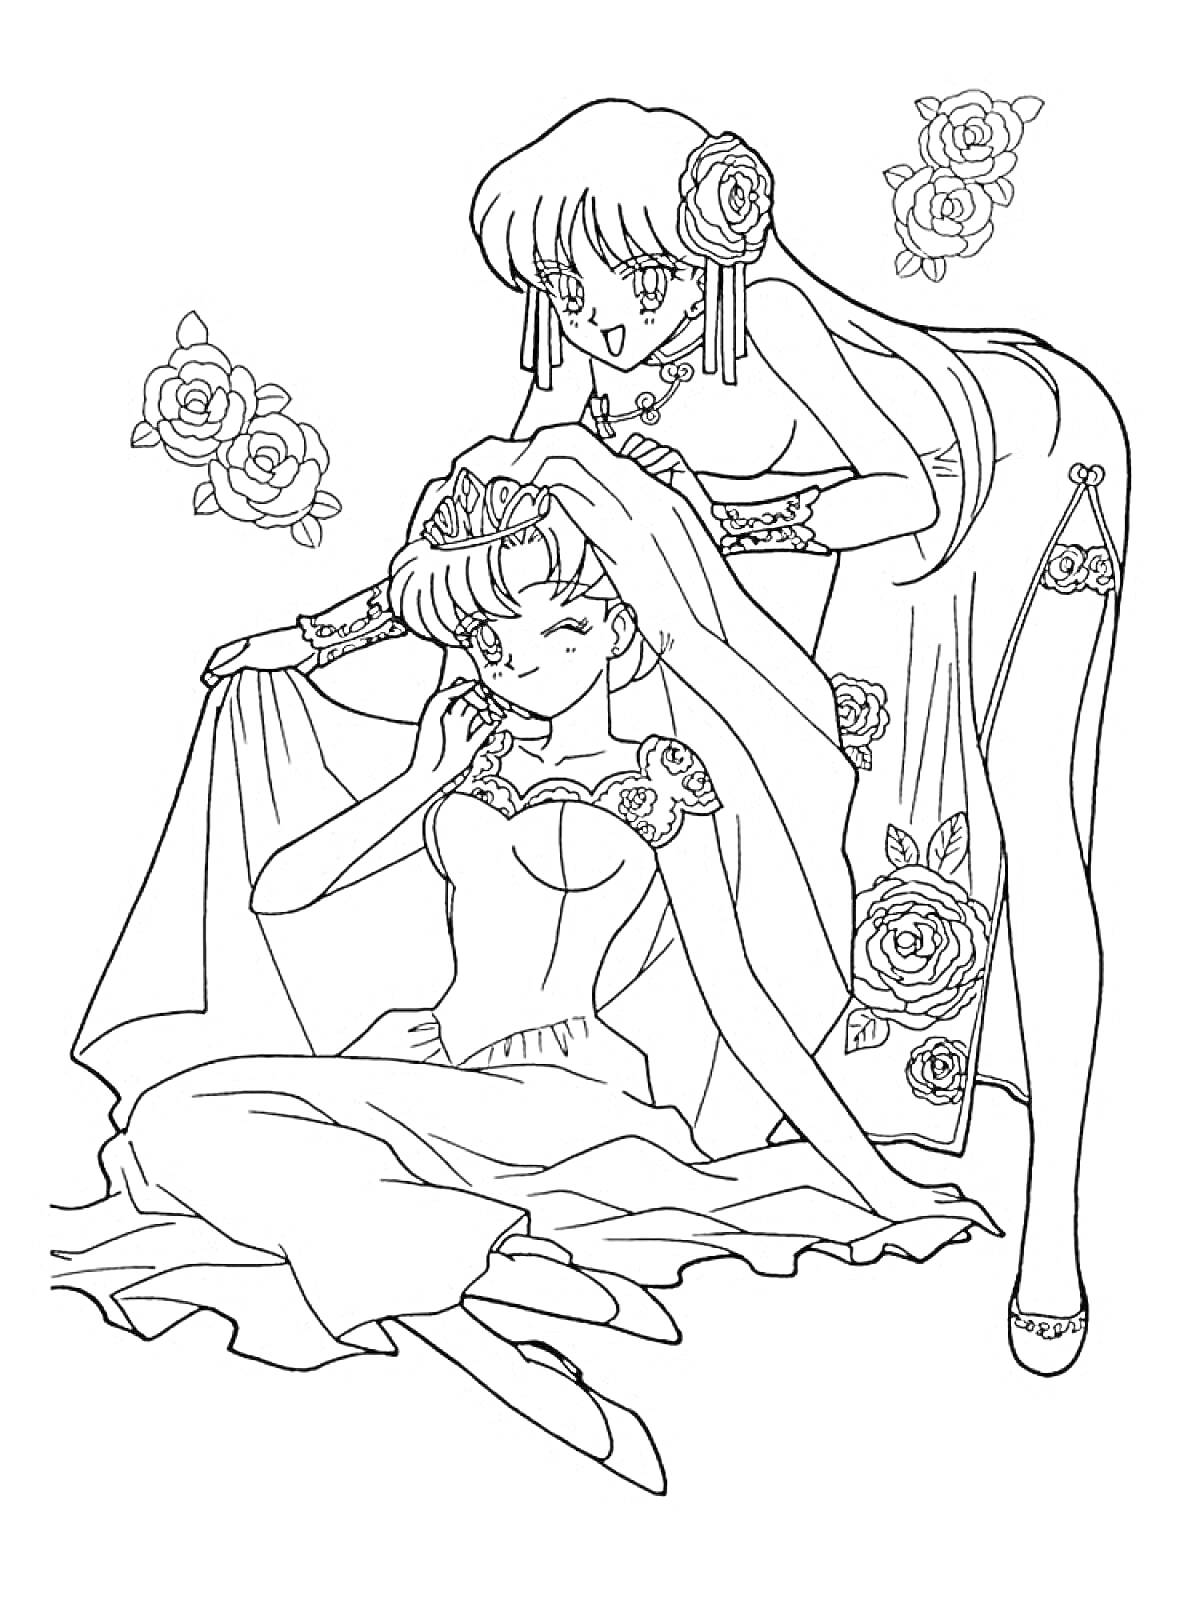 Раскраска Девушки из Сейлормун, одна сидит в свадебном платье, а другая поправляет ей вуаль, вокруг них розы